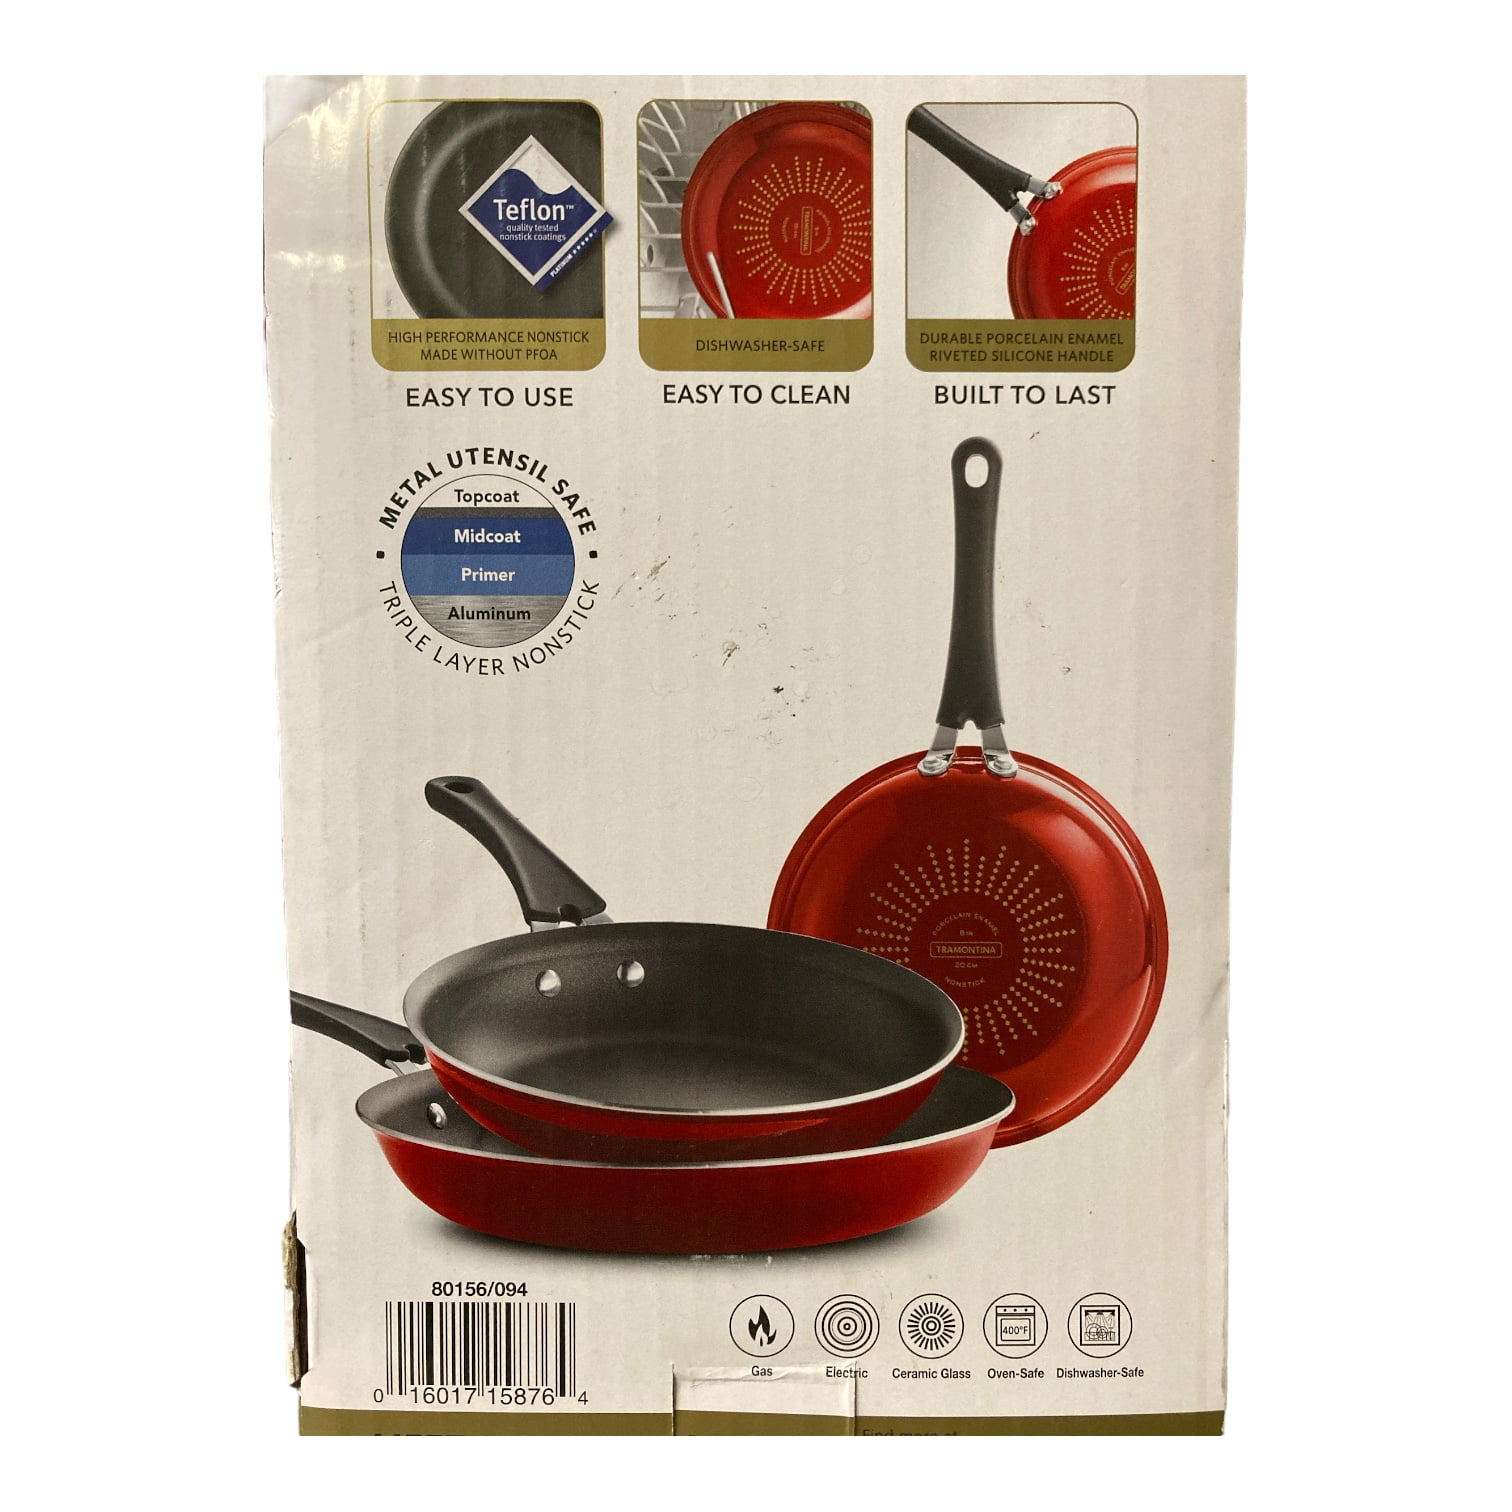 Tramontina 3 Pk Fry Pans - Metallic Red, 80156/102DS